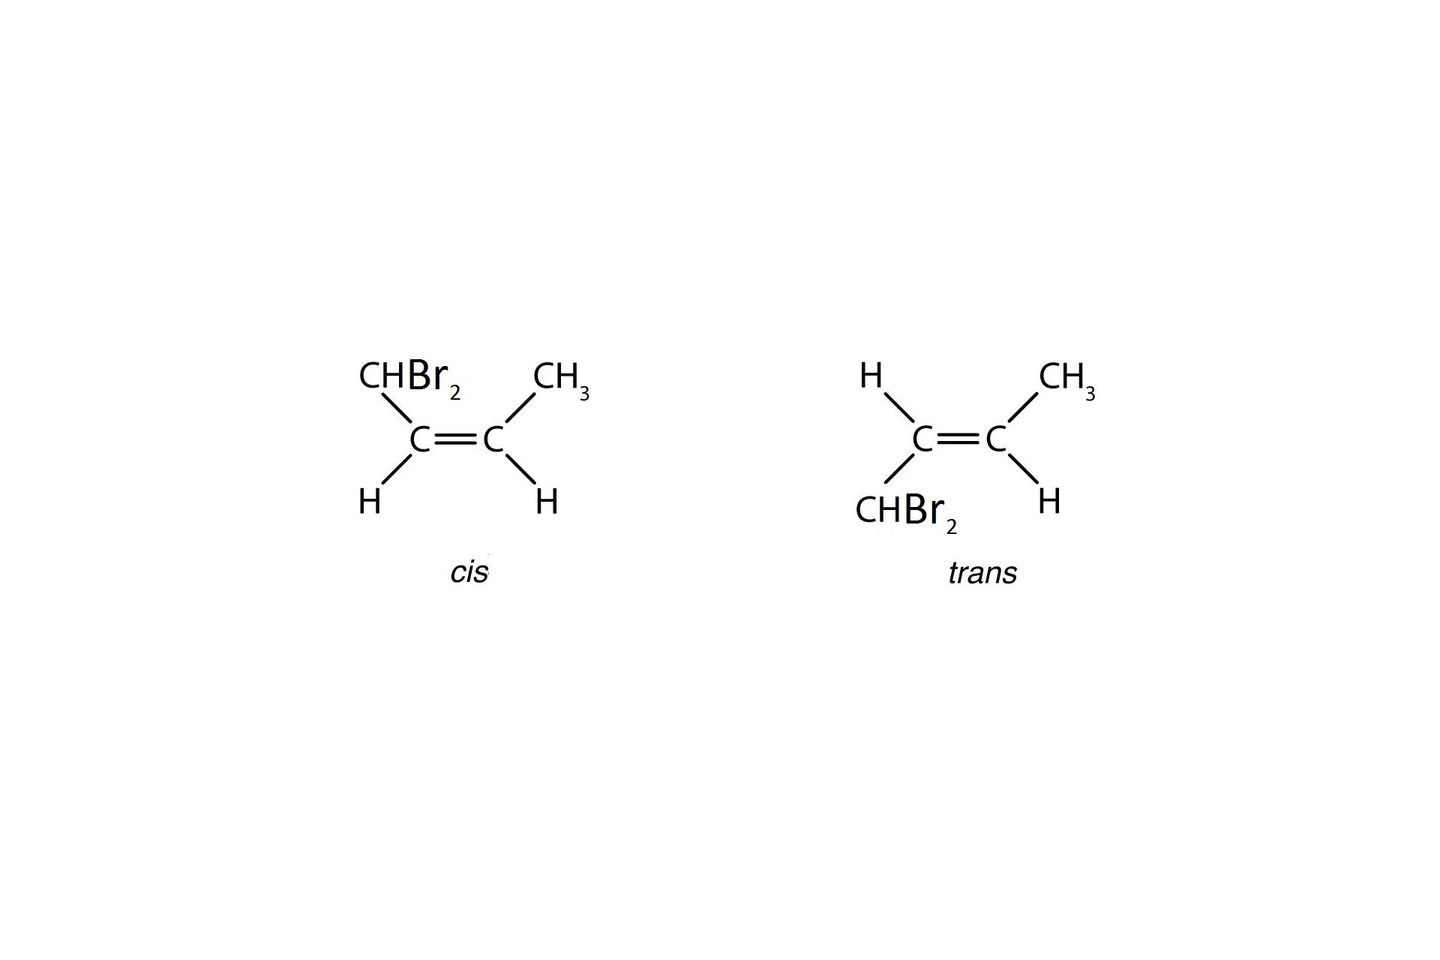  Atkreipkite dėmesį į vandenilio (H) atomus. Cisizomere jie išsidėstę vienoje plokštumoje, transizomere – kaip transatlantinis skrydis – išsiskirstę į visas puses.